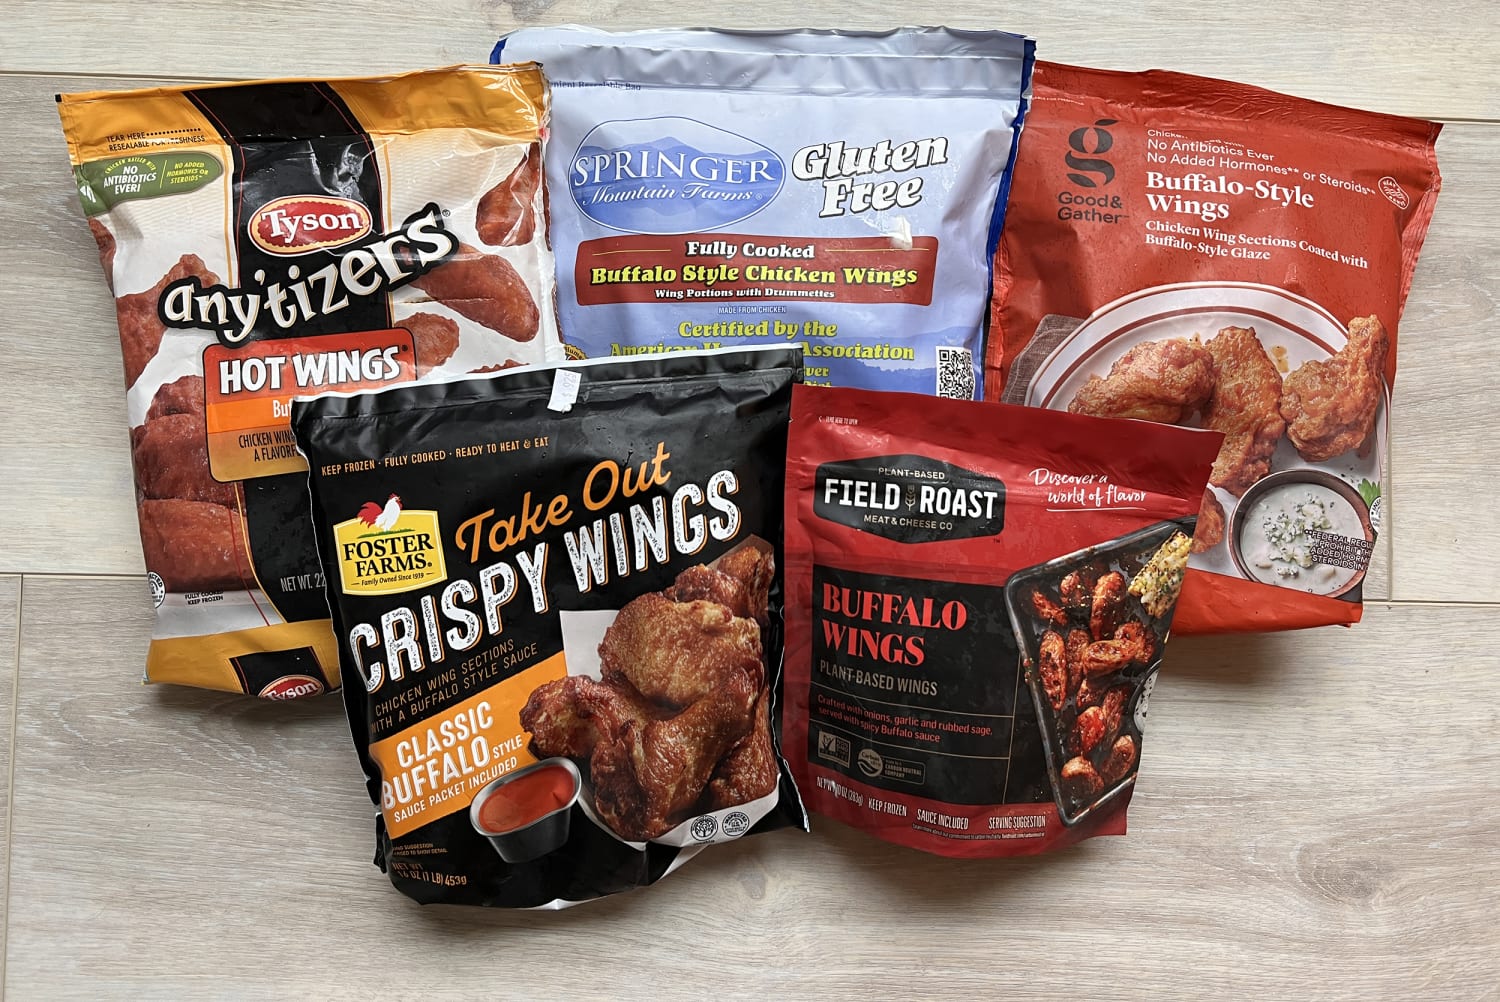 Crispiest Frozen Buffalo Wings: Which Brand Is Best?